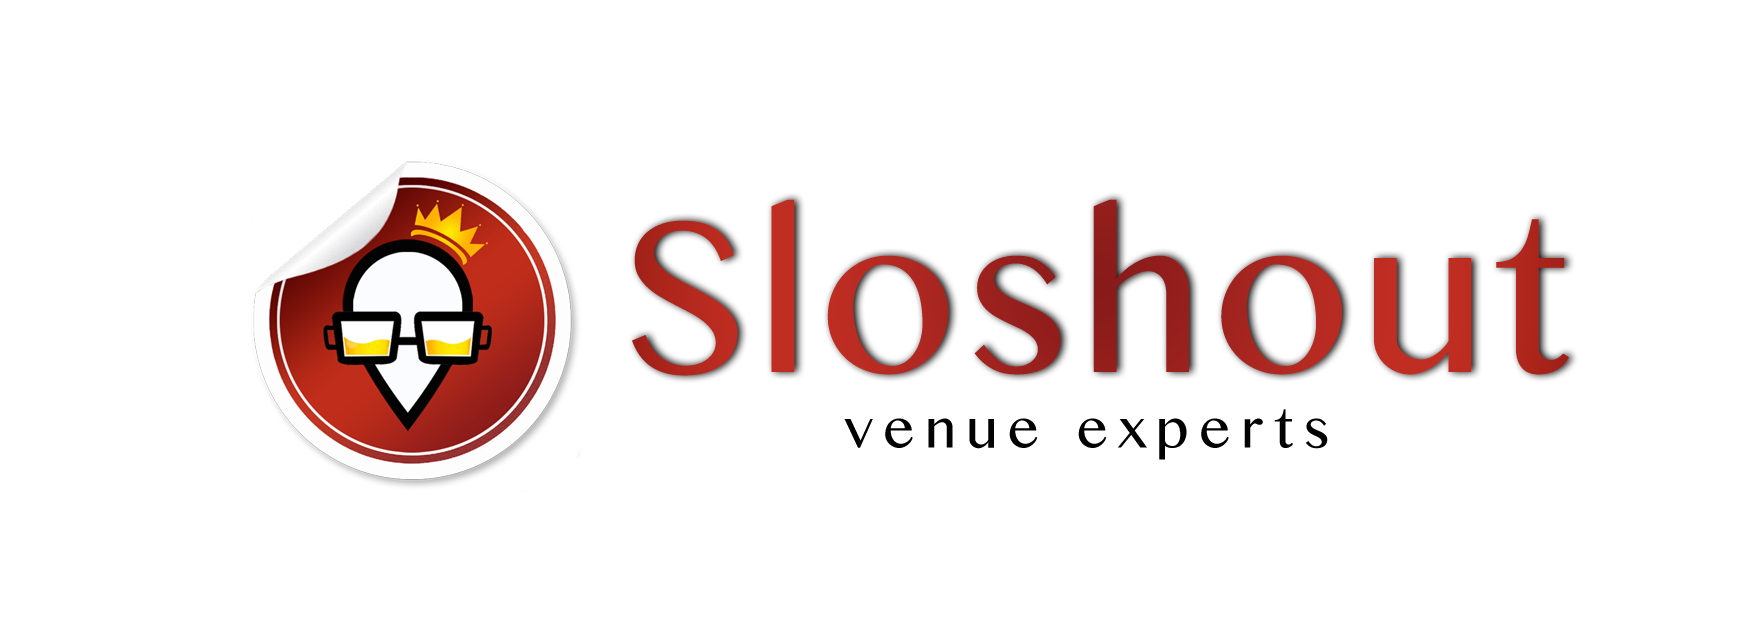 Sloshout - Logo